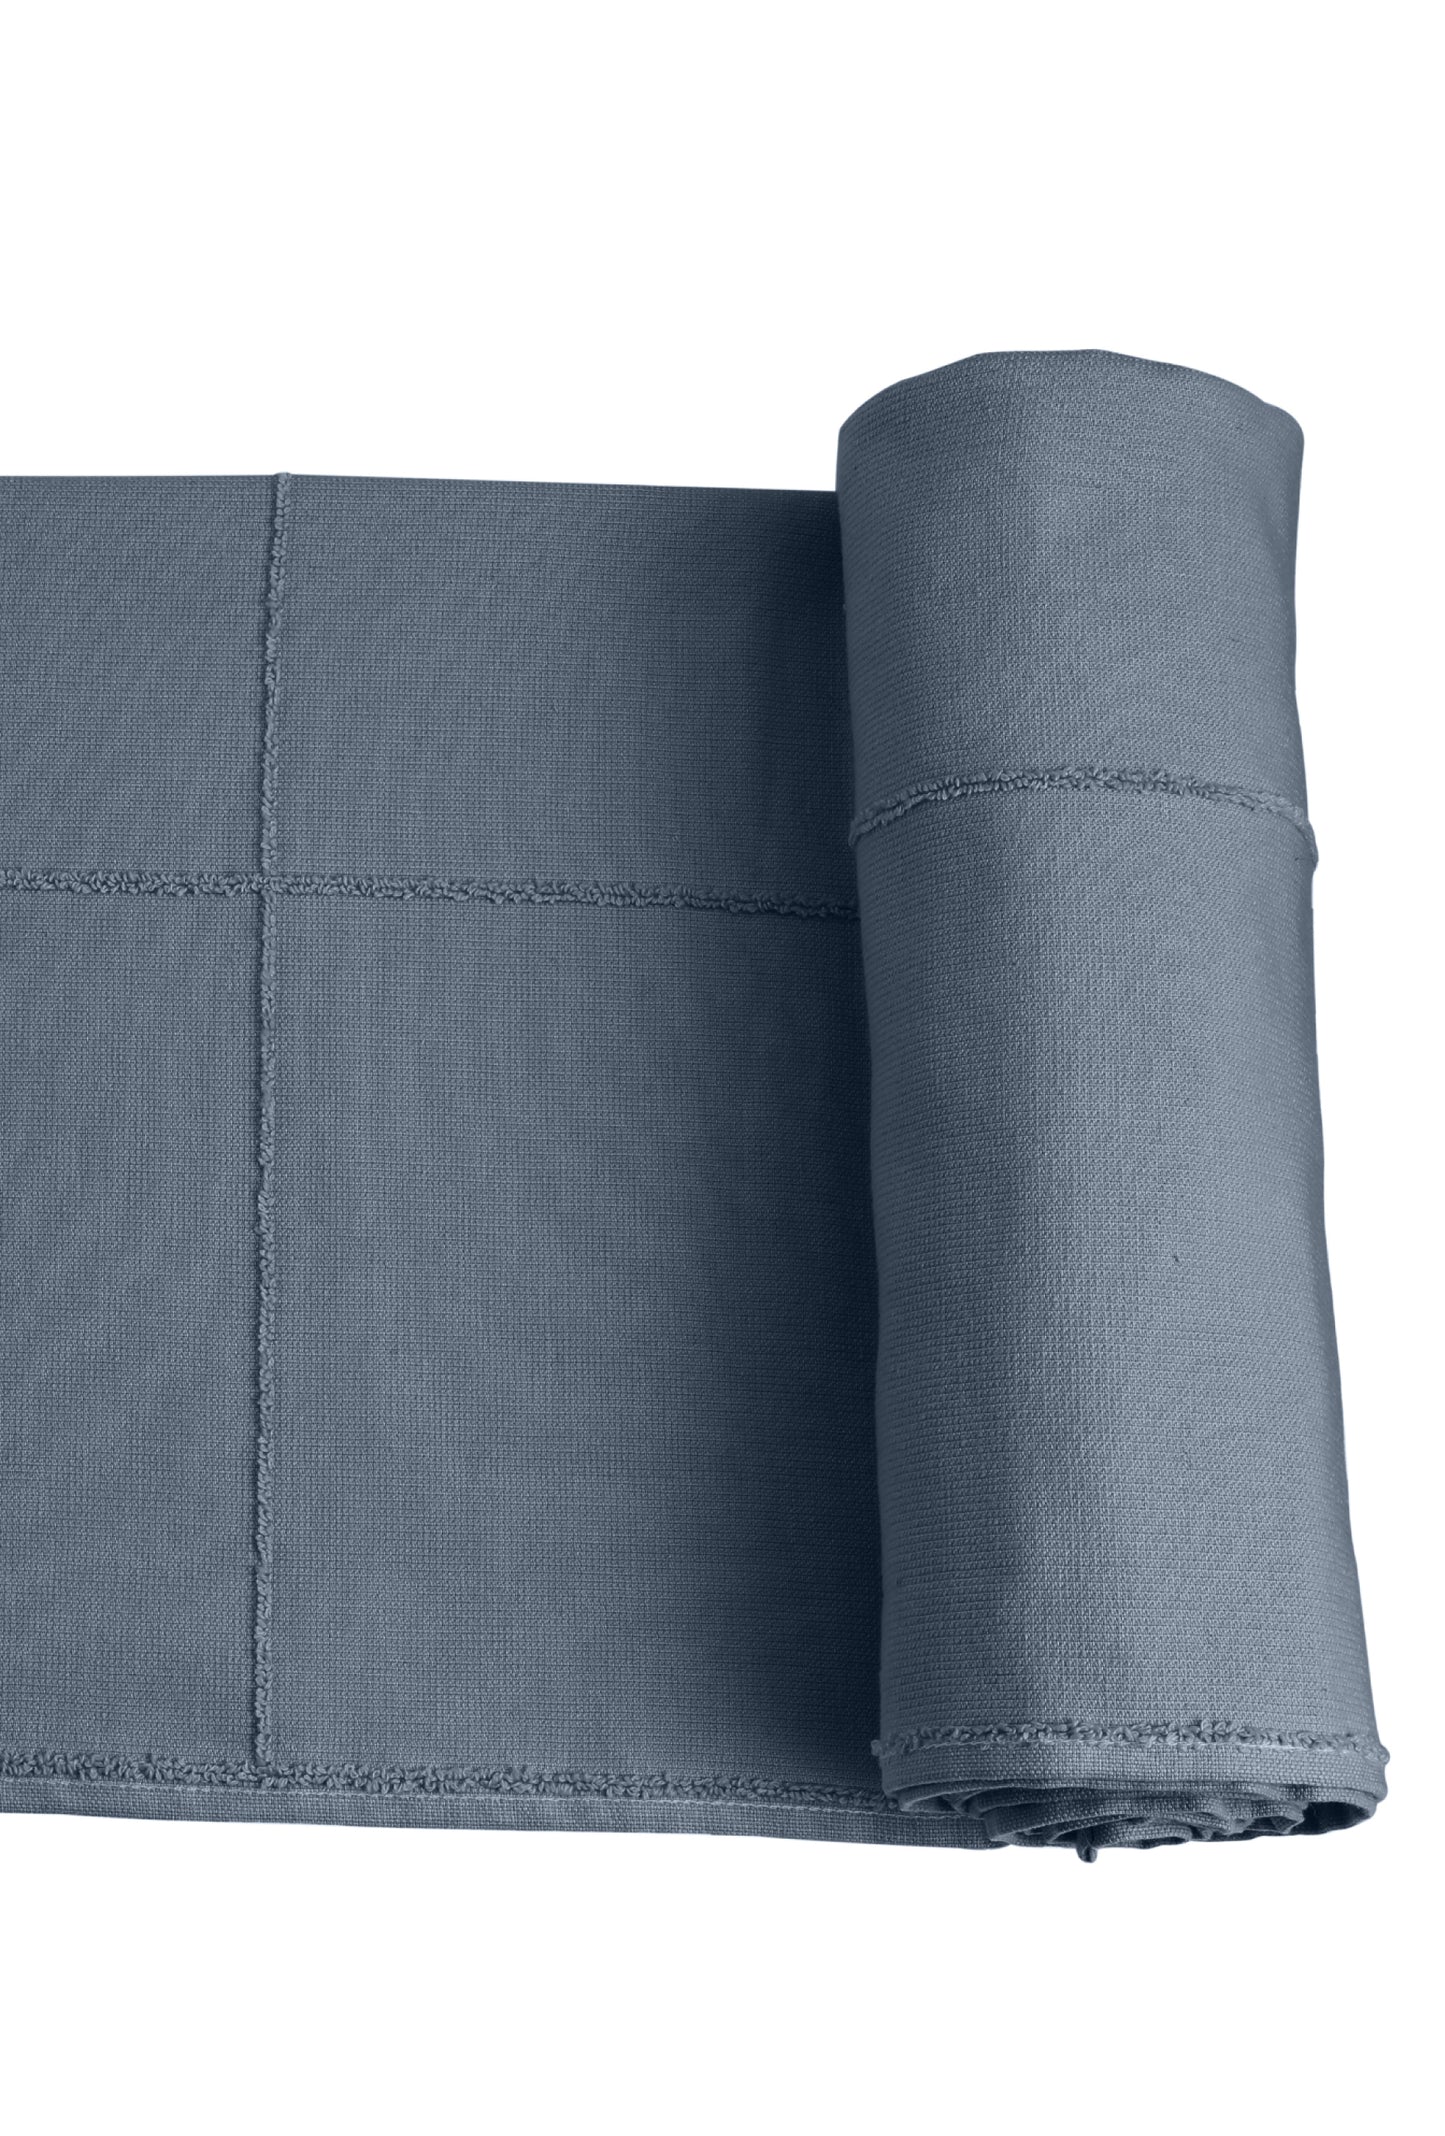 Calm towel To go - Grey Blue (60x120)